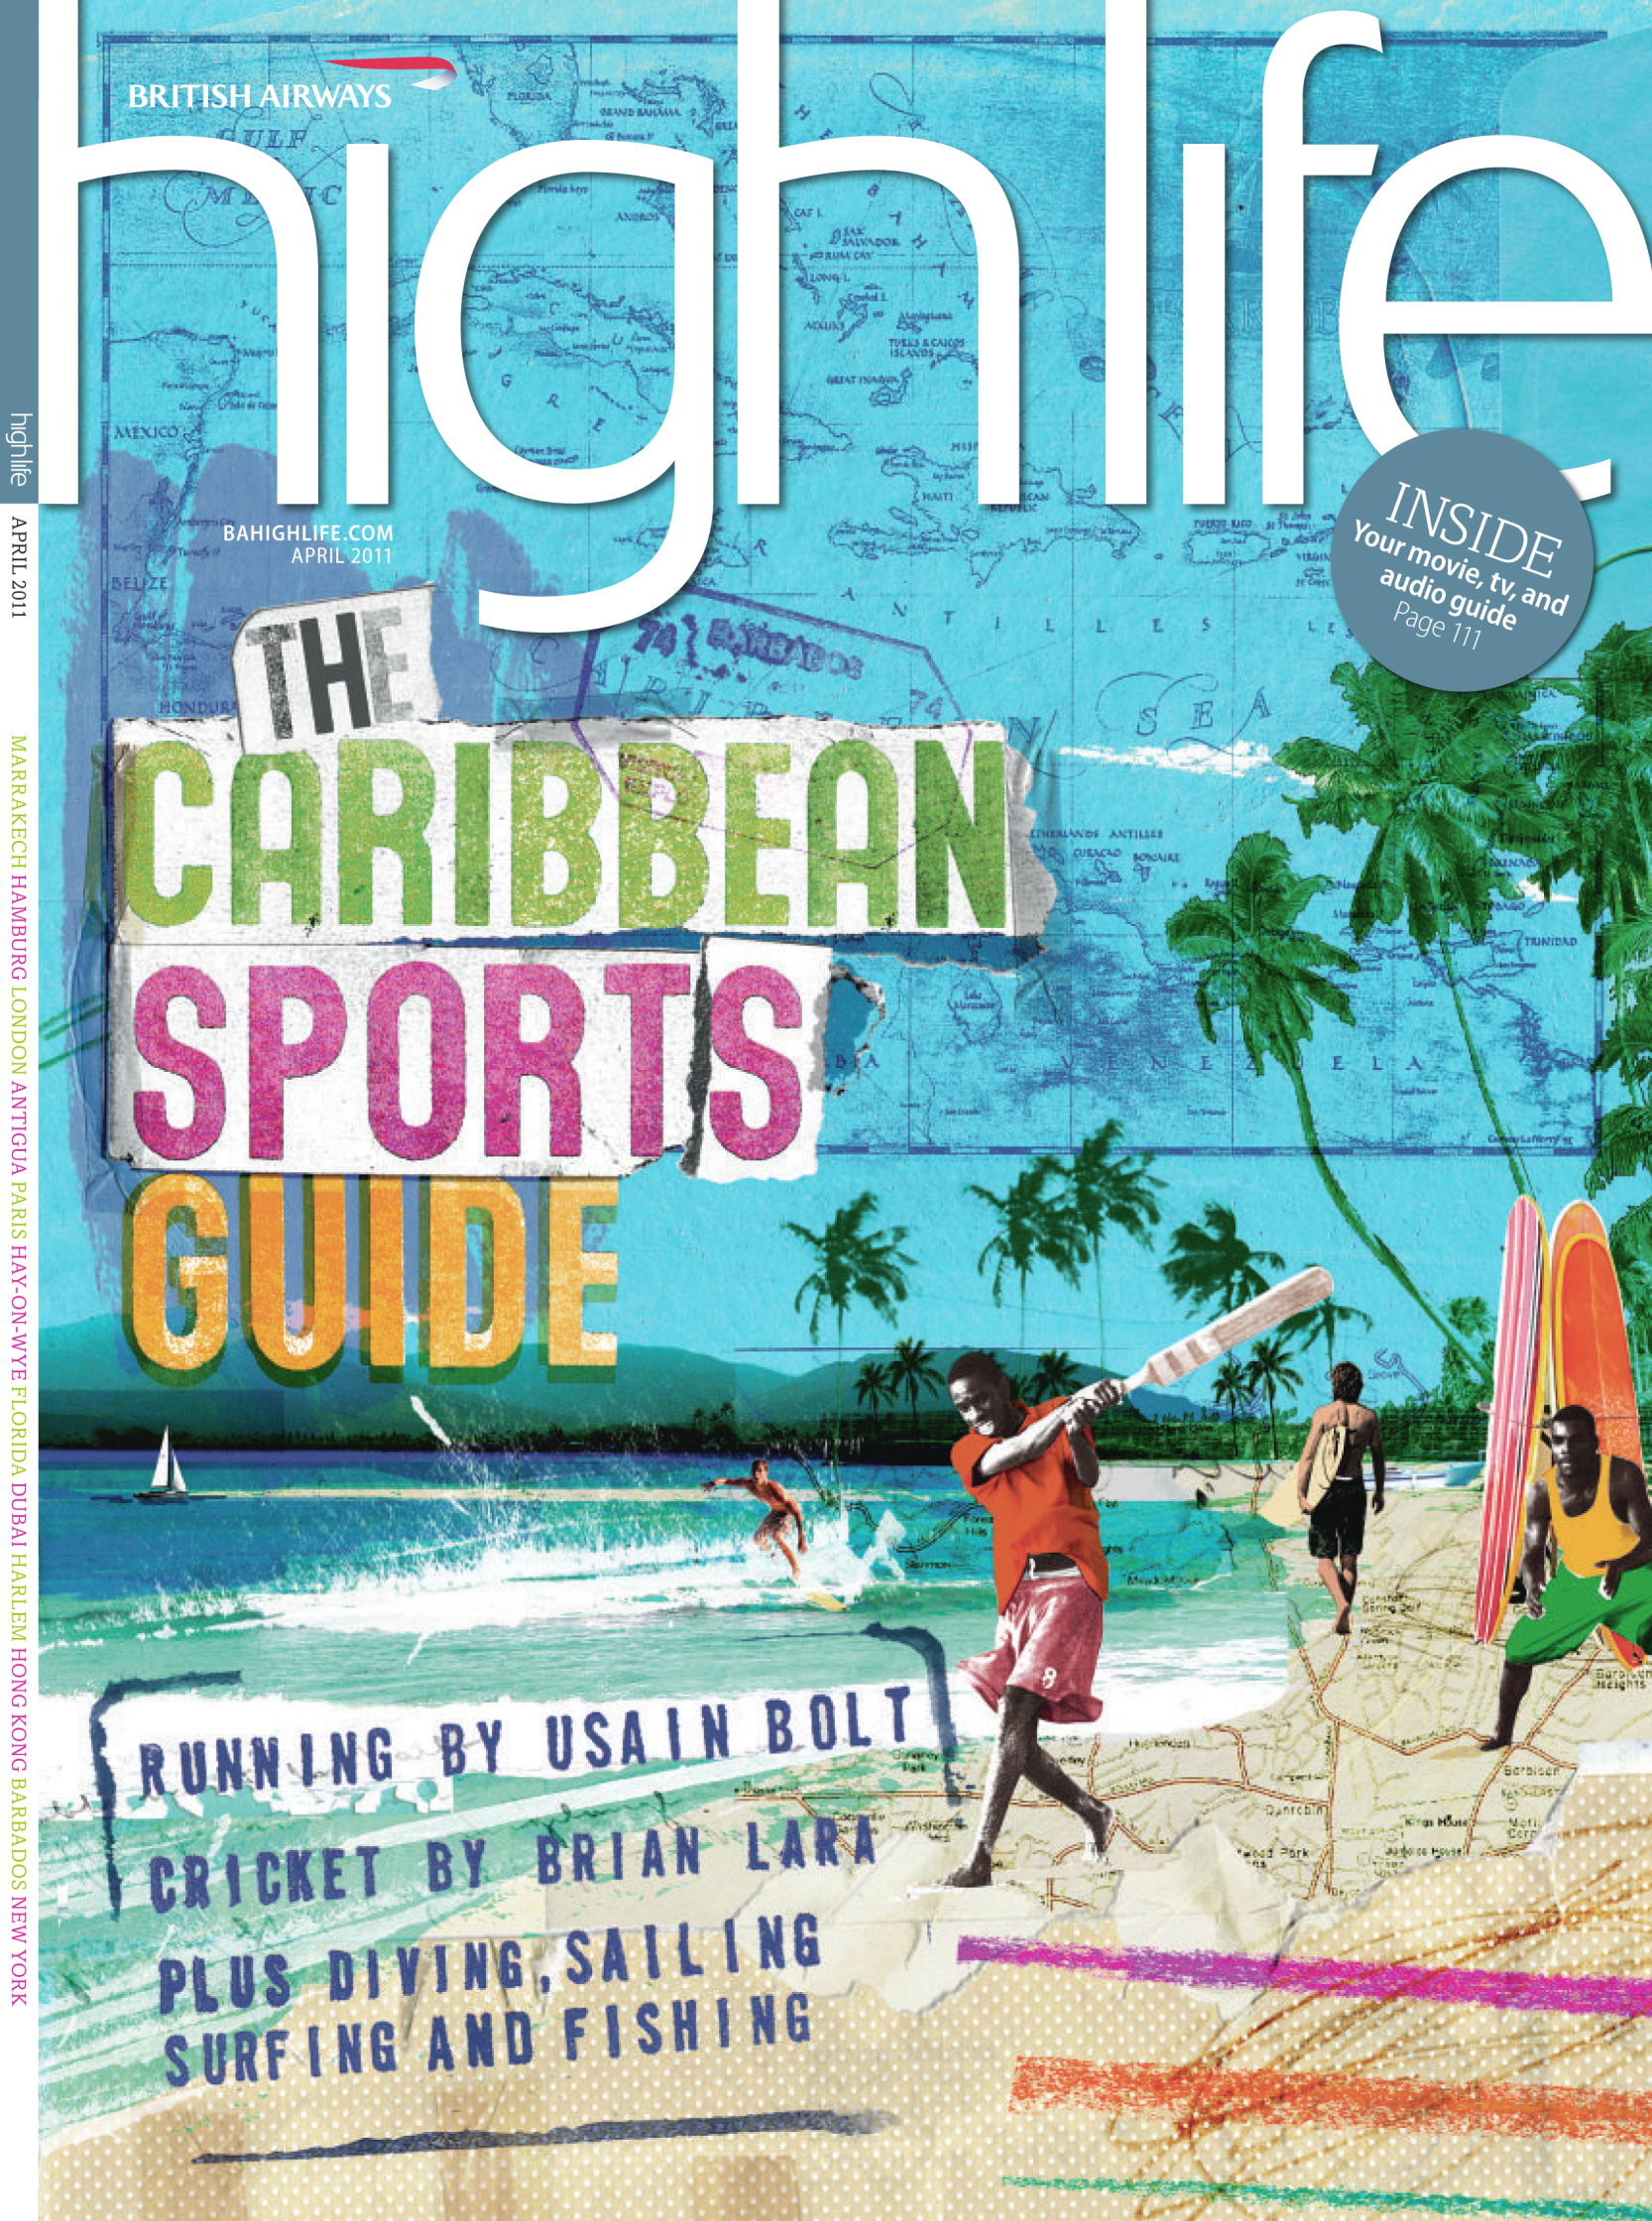 Hanson_BA_High Life_Caribean Sports Guide_.jpg